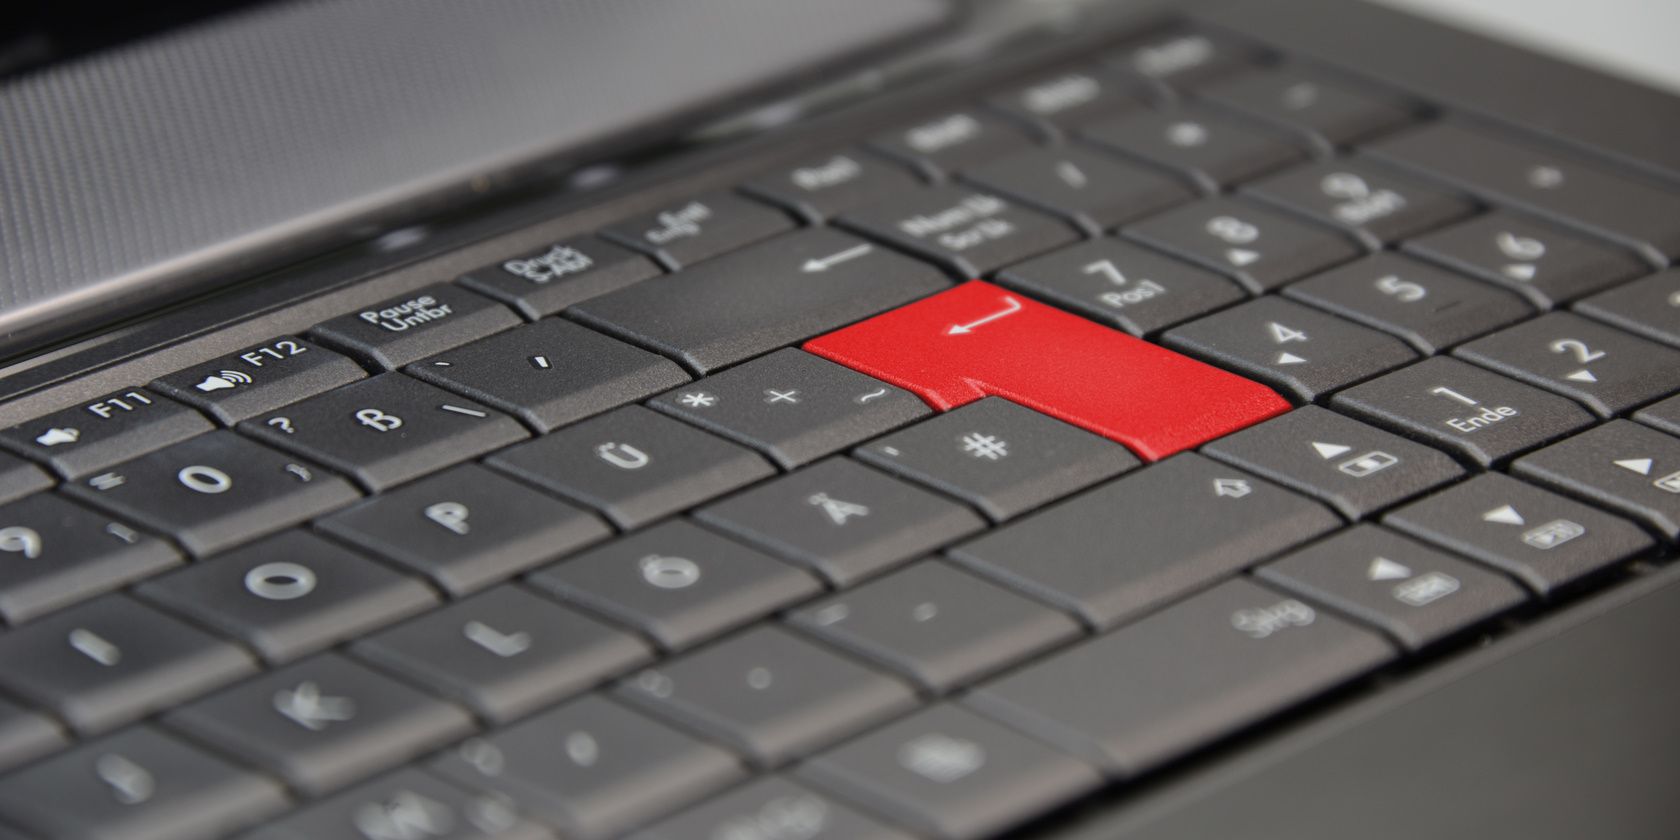 Клавиша Enter на клавиатуре ноутбука выделена красным